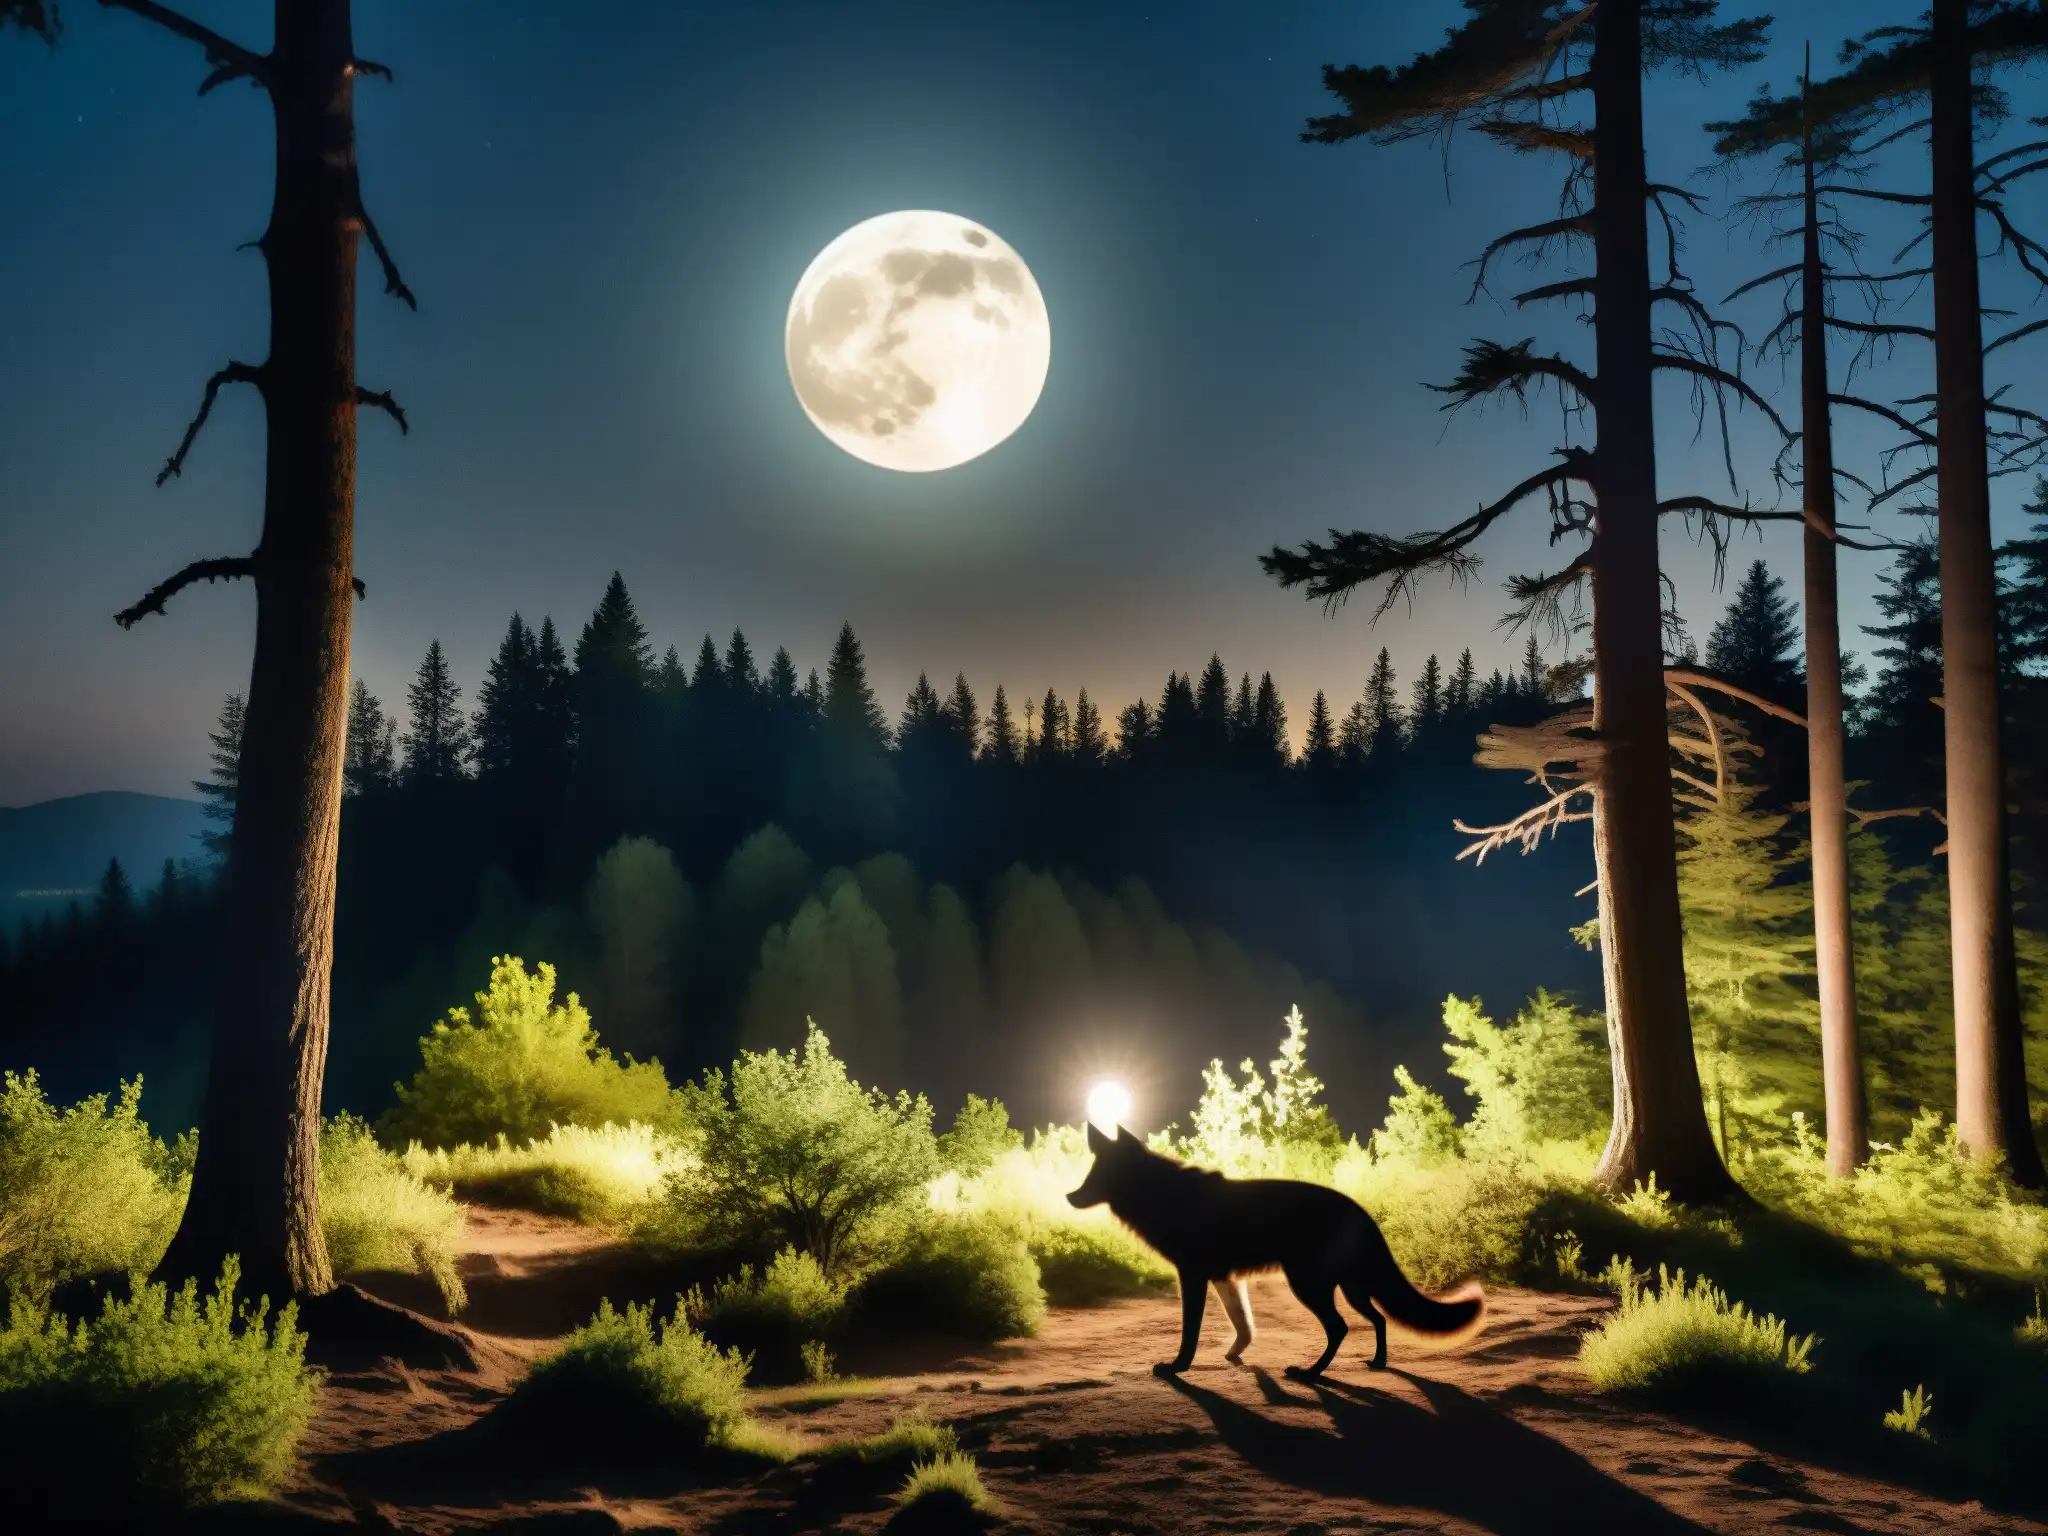 Imagen nocturna de un bosque oscuro con la silueta de un misterioso Chupacabras, evocando su origen mitológico